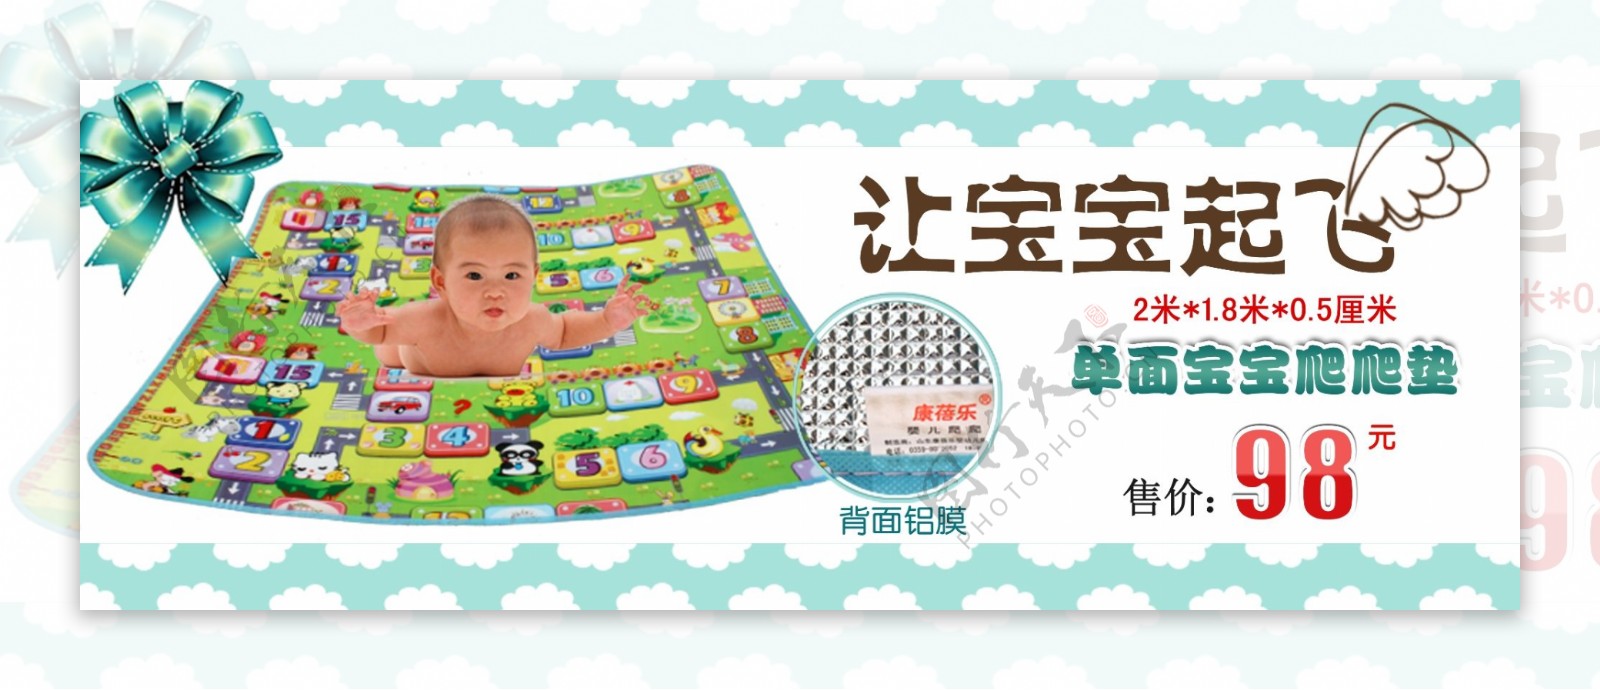 淘宝婴幼儿用品尿布海报设计图片